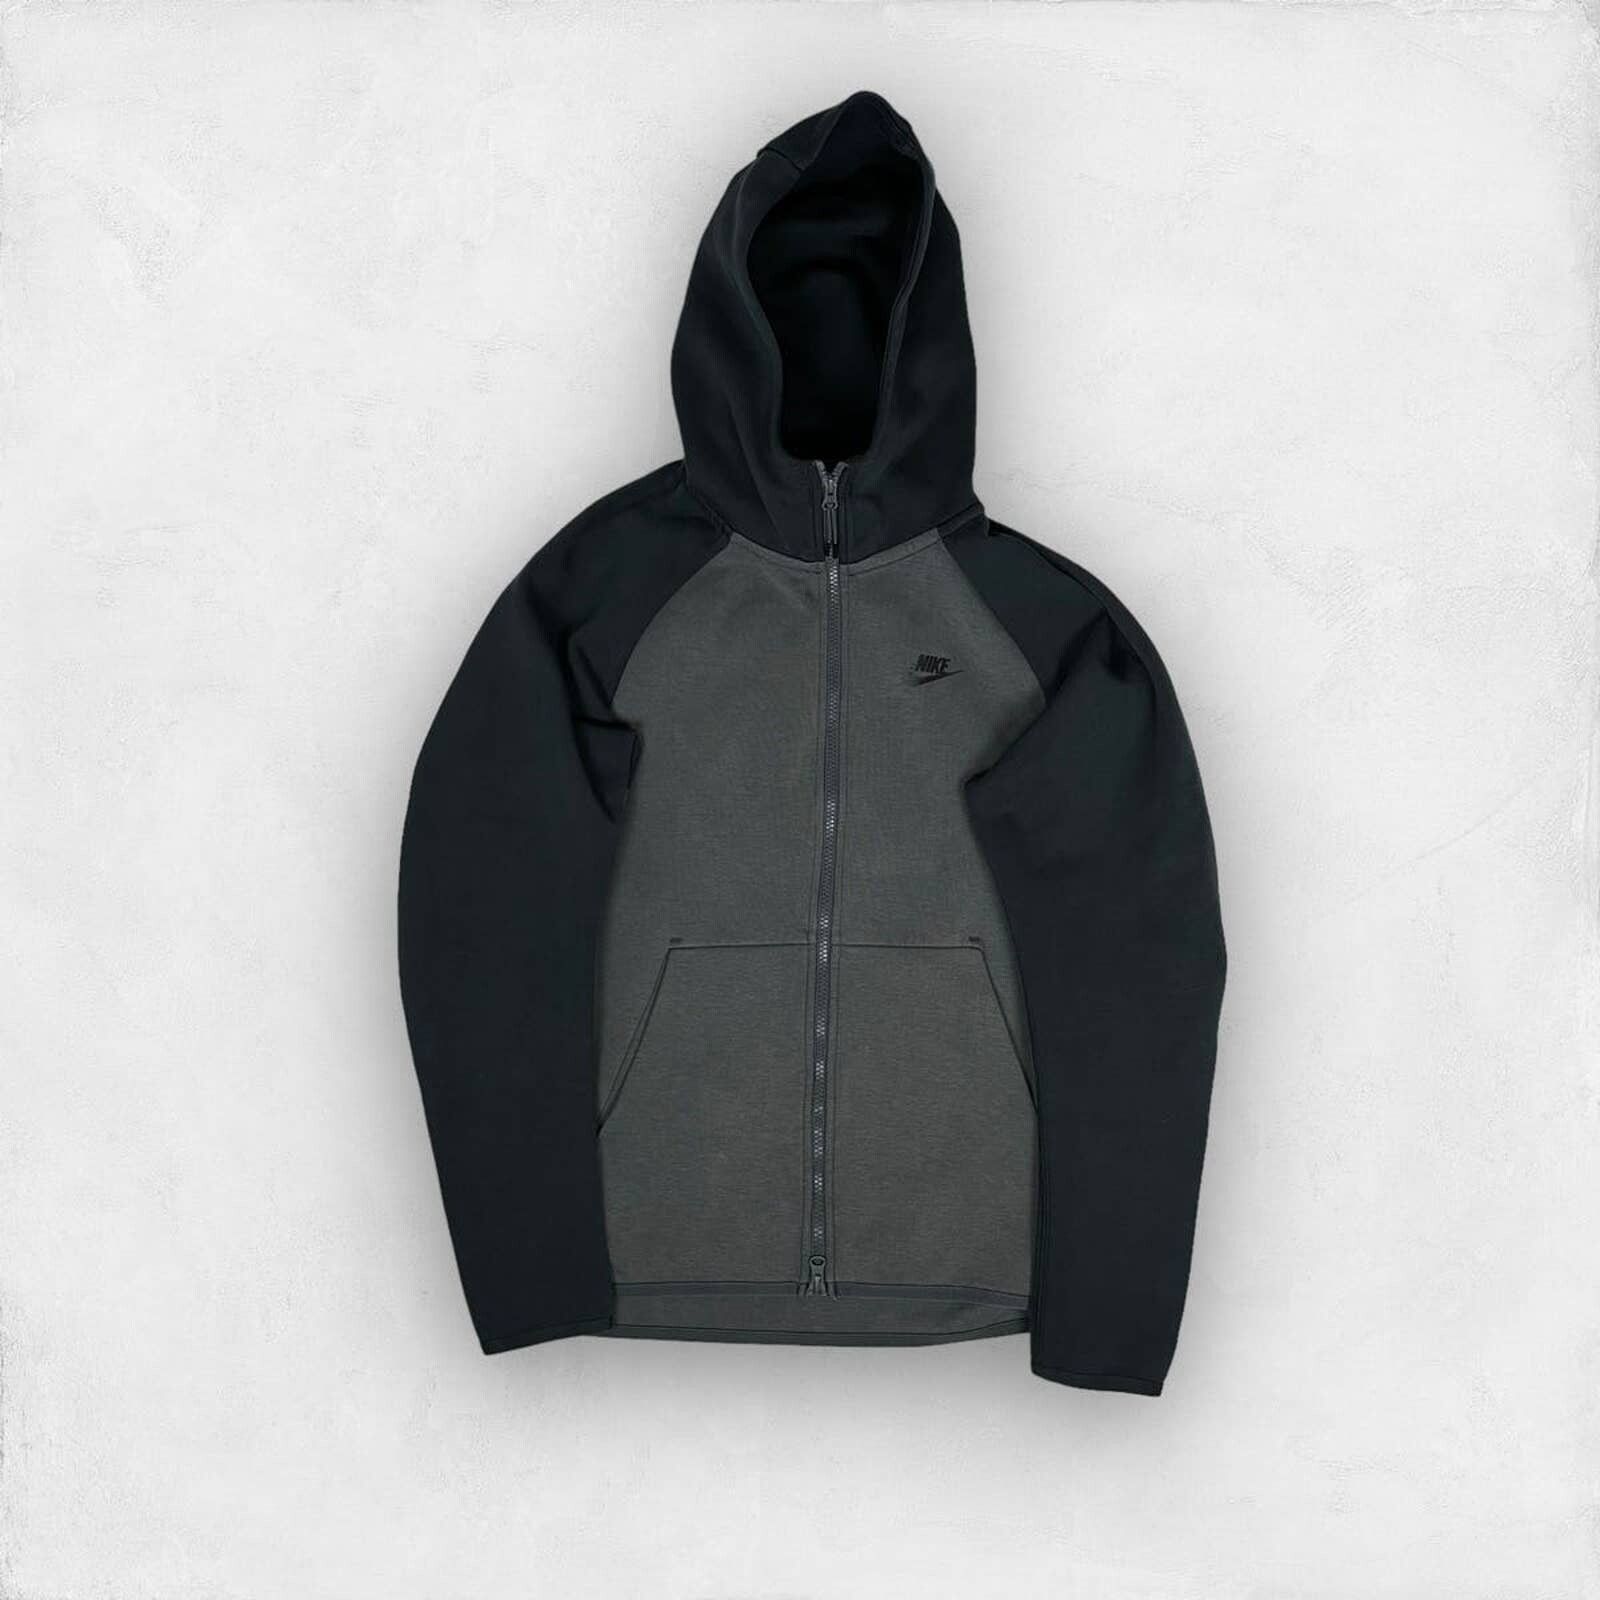 Nike Nike Tech Fleece Zip-up Hoodie Sweatshirt | Grailed